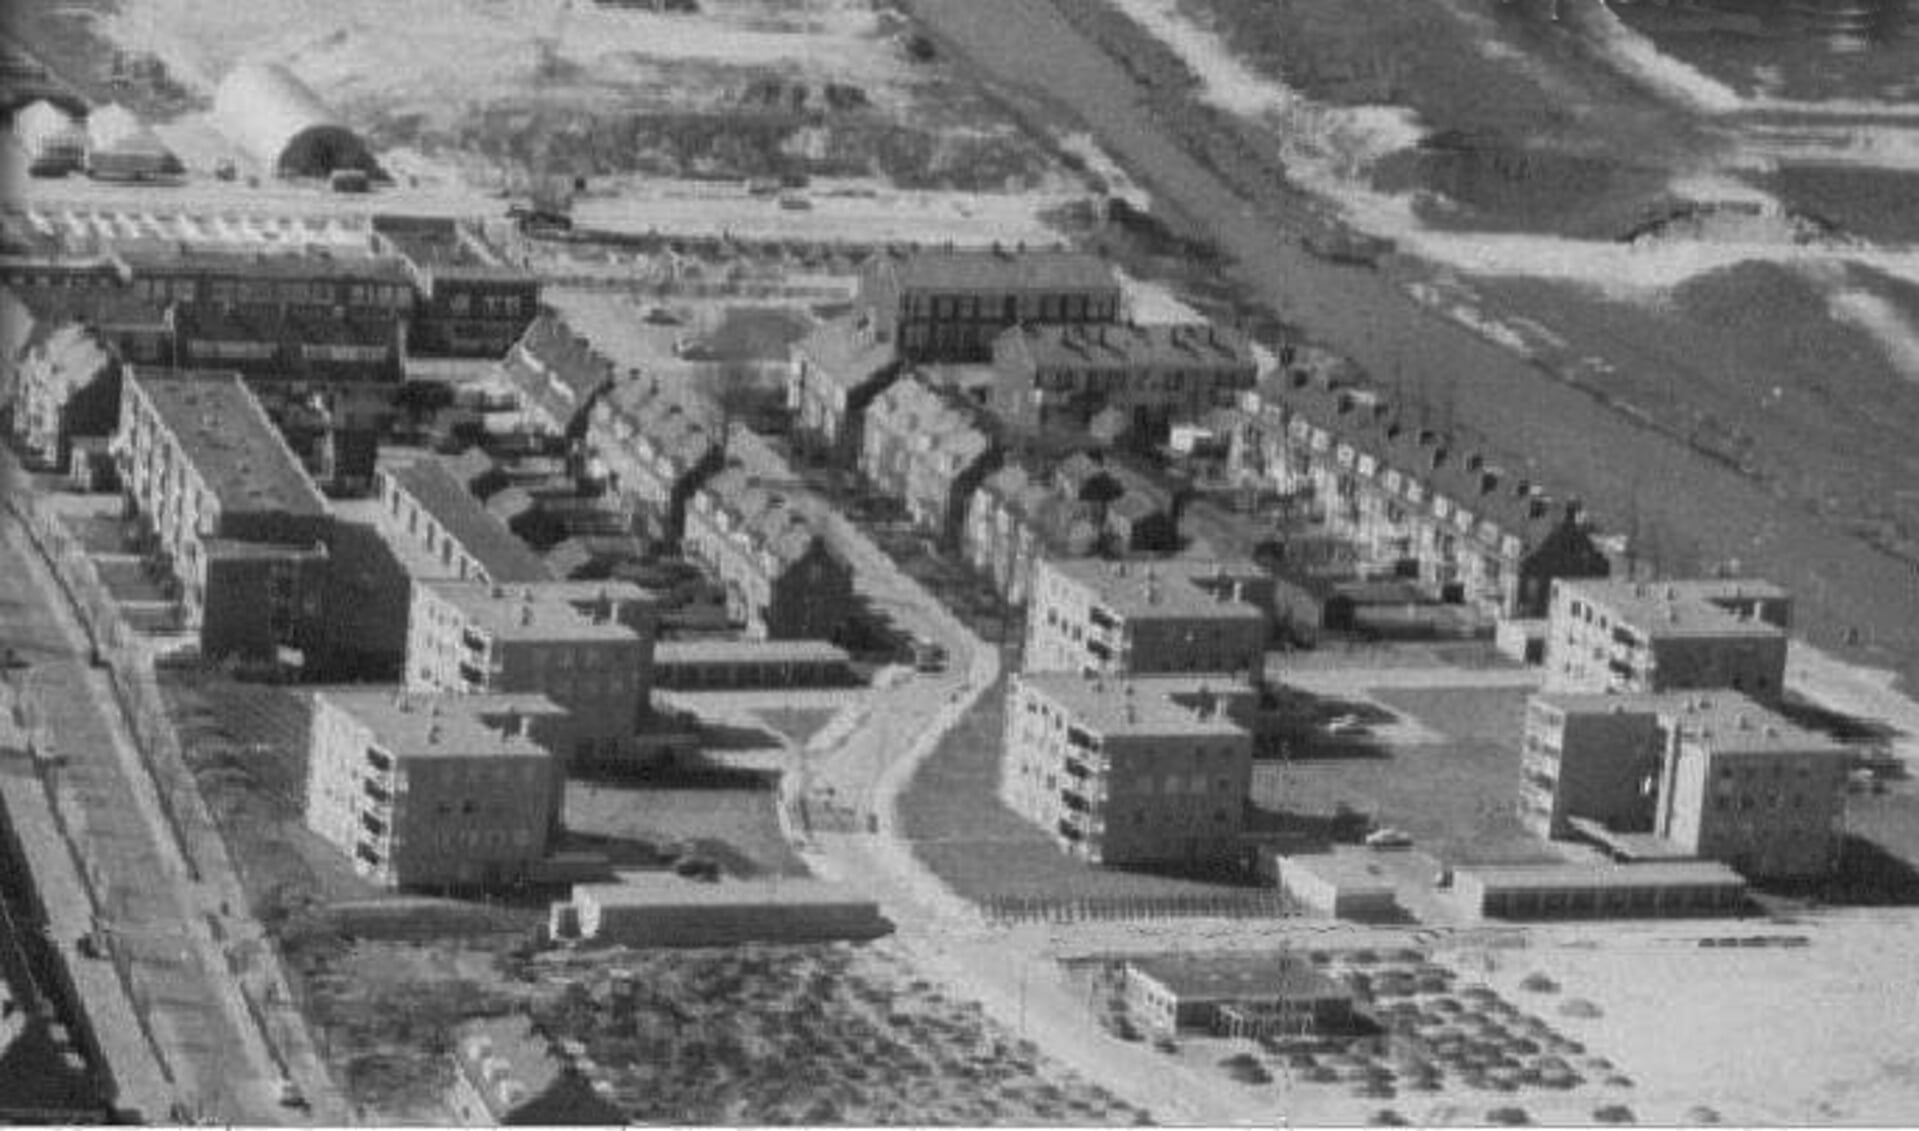 1968: Waddenland, laat de omgeving van de locatie zien: 6 woonblokjes van Pot-Keegstra.